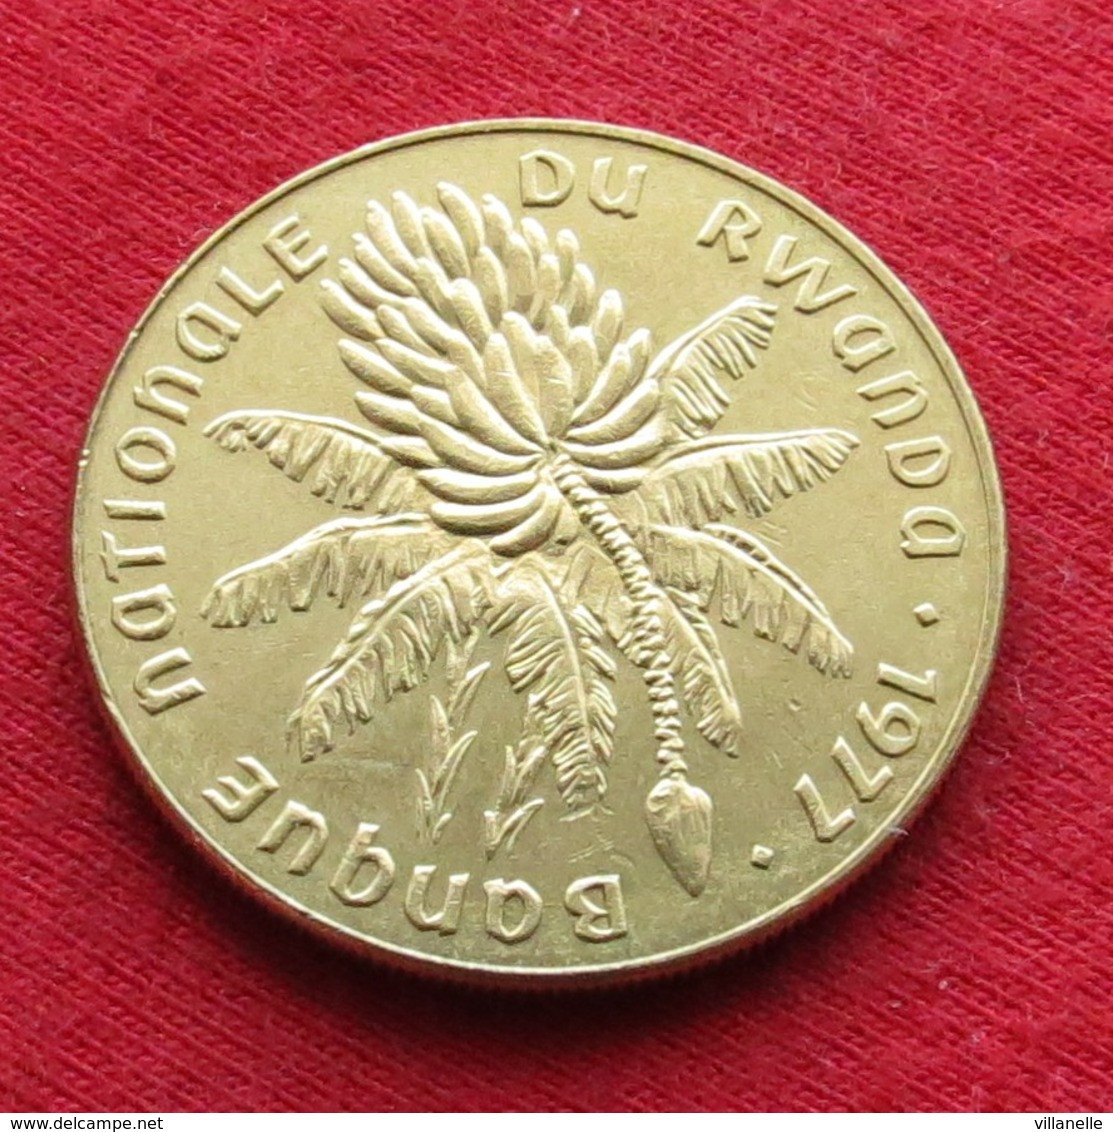 Rwanda 20 Franc 1977 Ruanda  UNC ºº - Rwanda